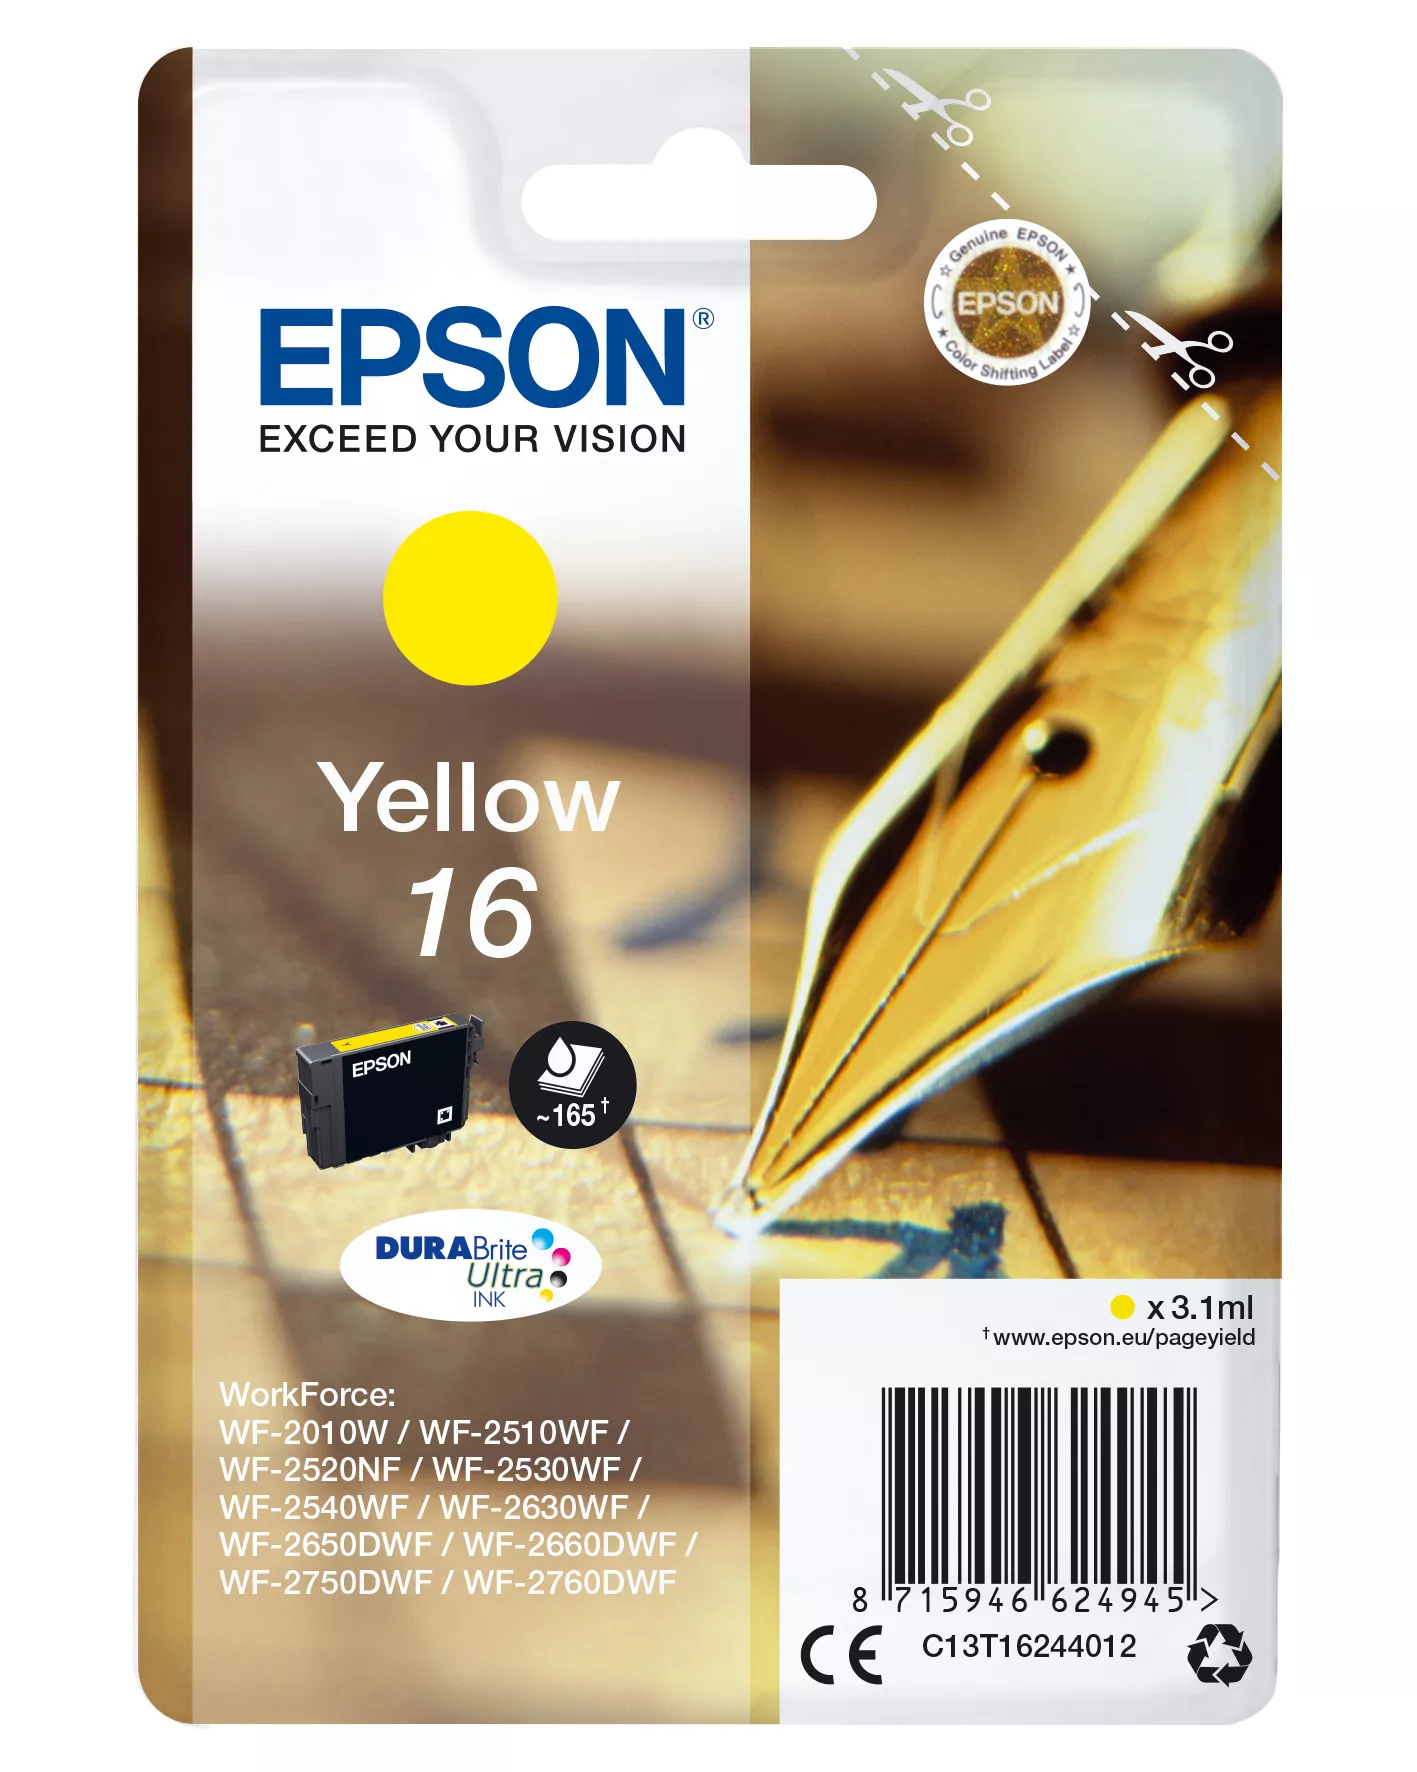 Achat EPSON 16 cartouche dencre jaune capacité standard 3.1ml au meilleur prix